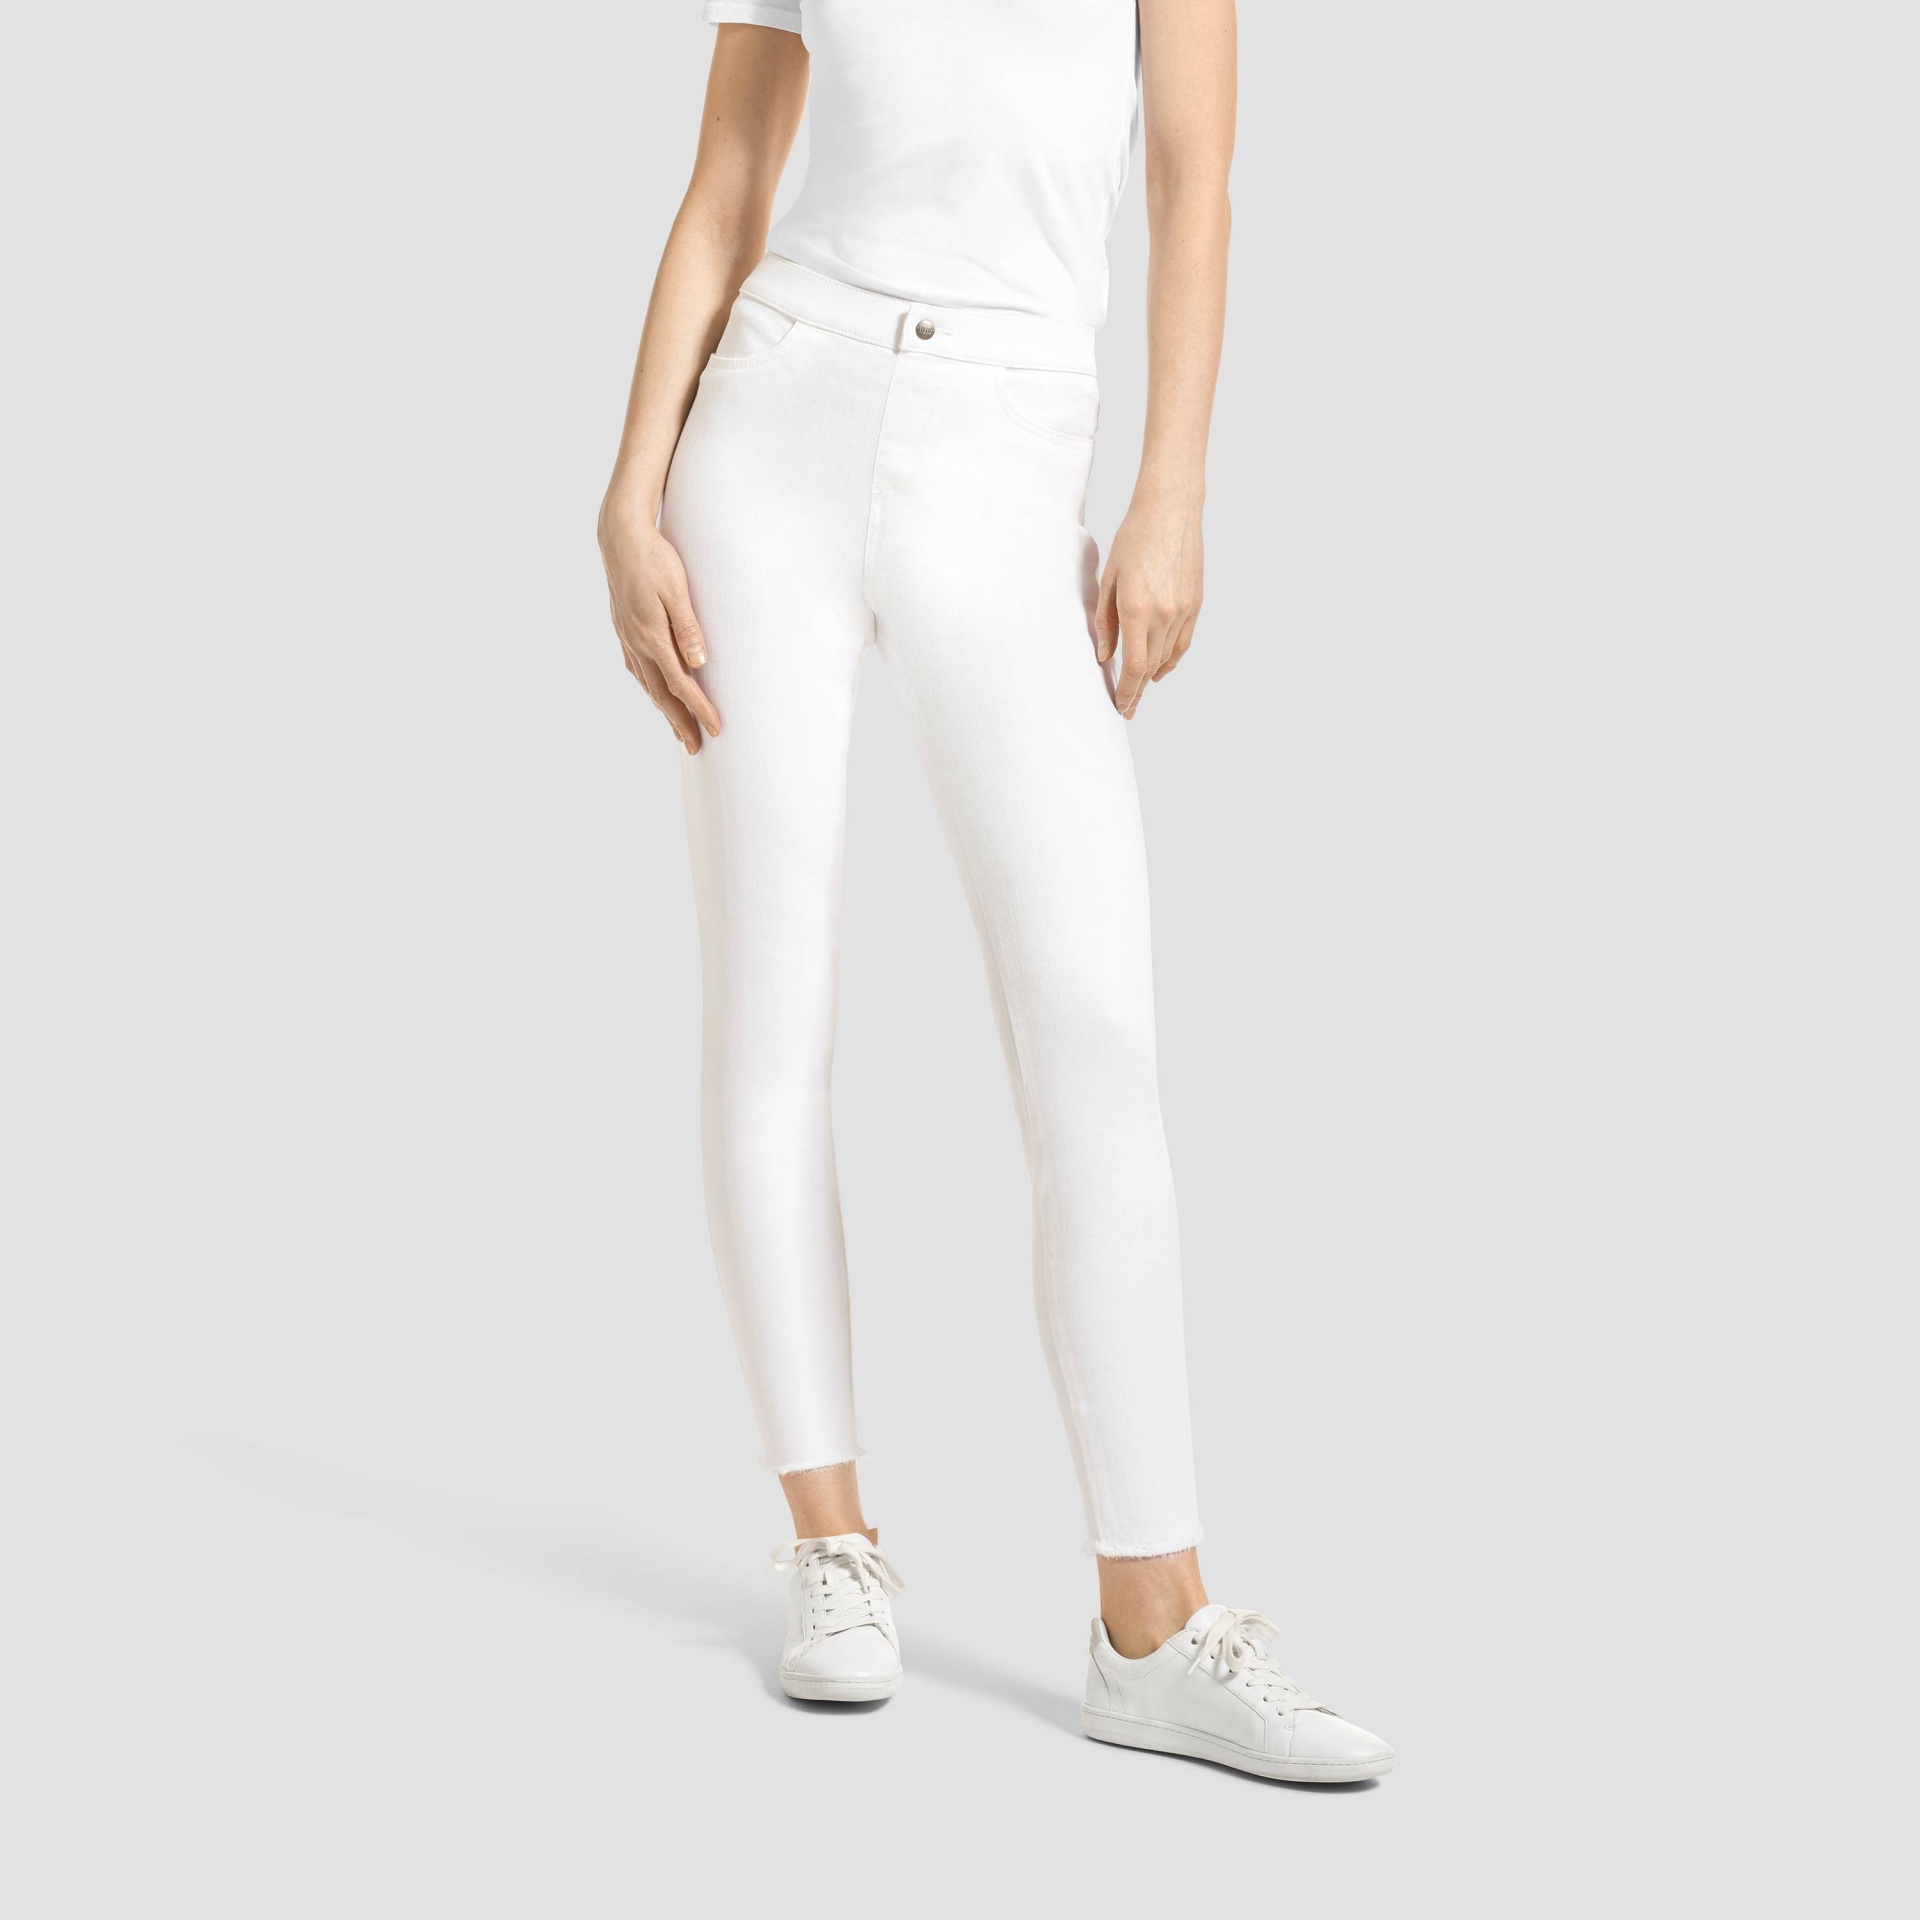 Hue Studio Women's Mid-Rise Frayed Edge Jeans Leggings - White XL